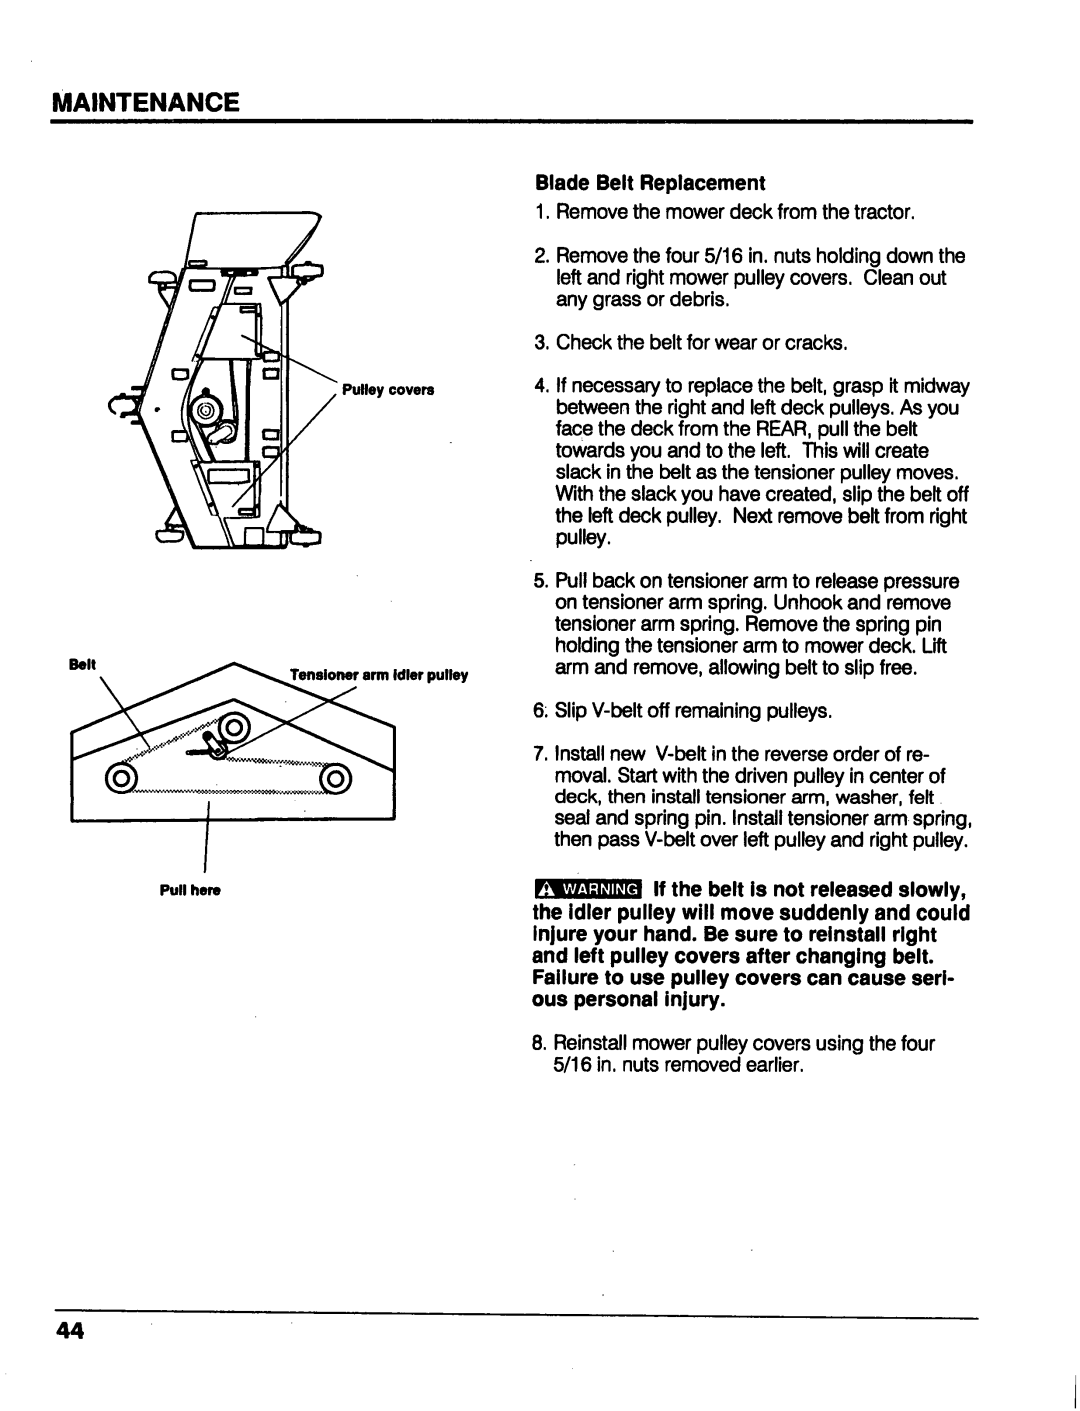 Honda Power Equipment MM52 manual Blade Belt Replacement, Maintenance 